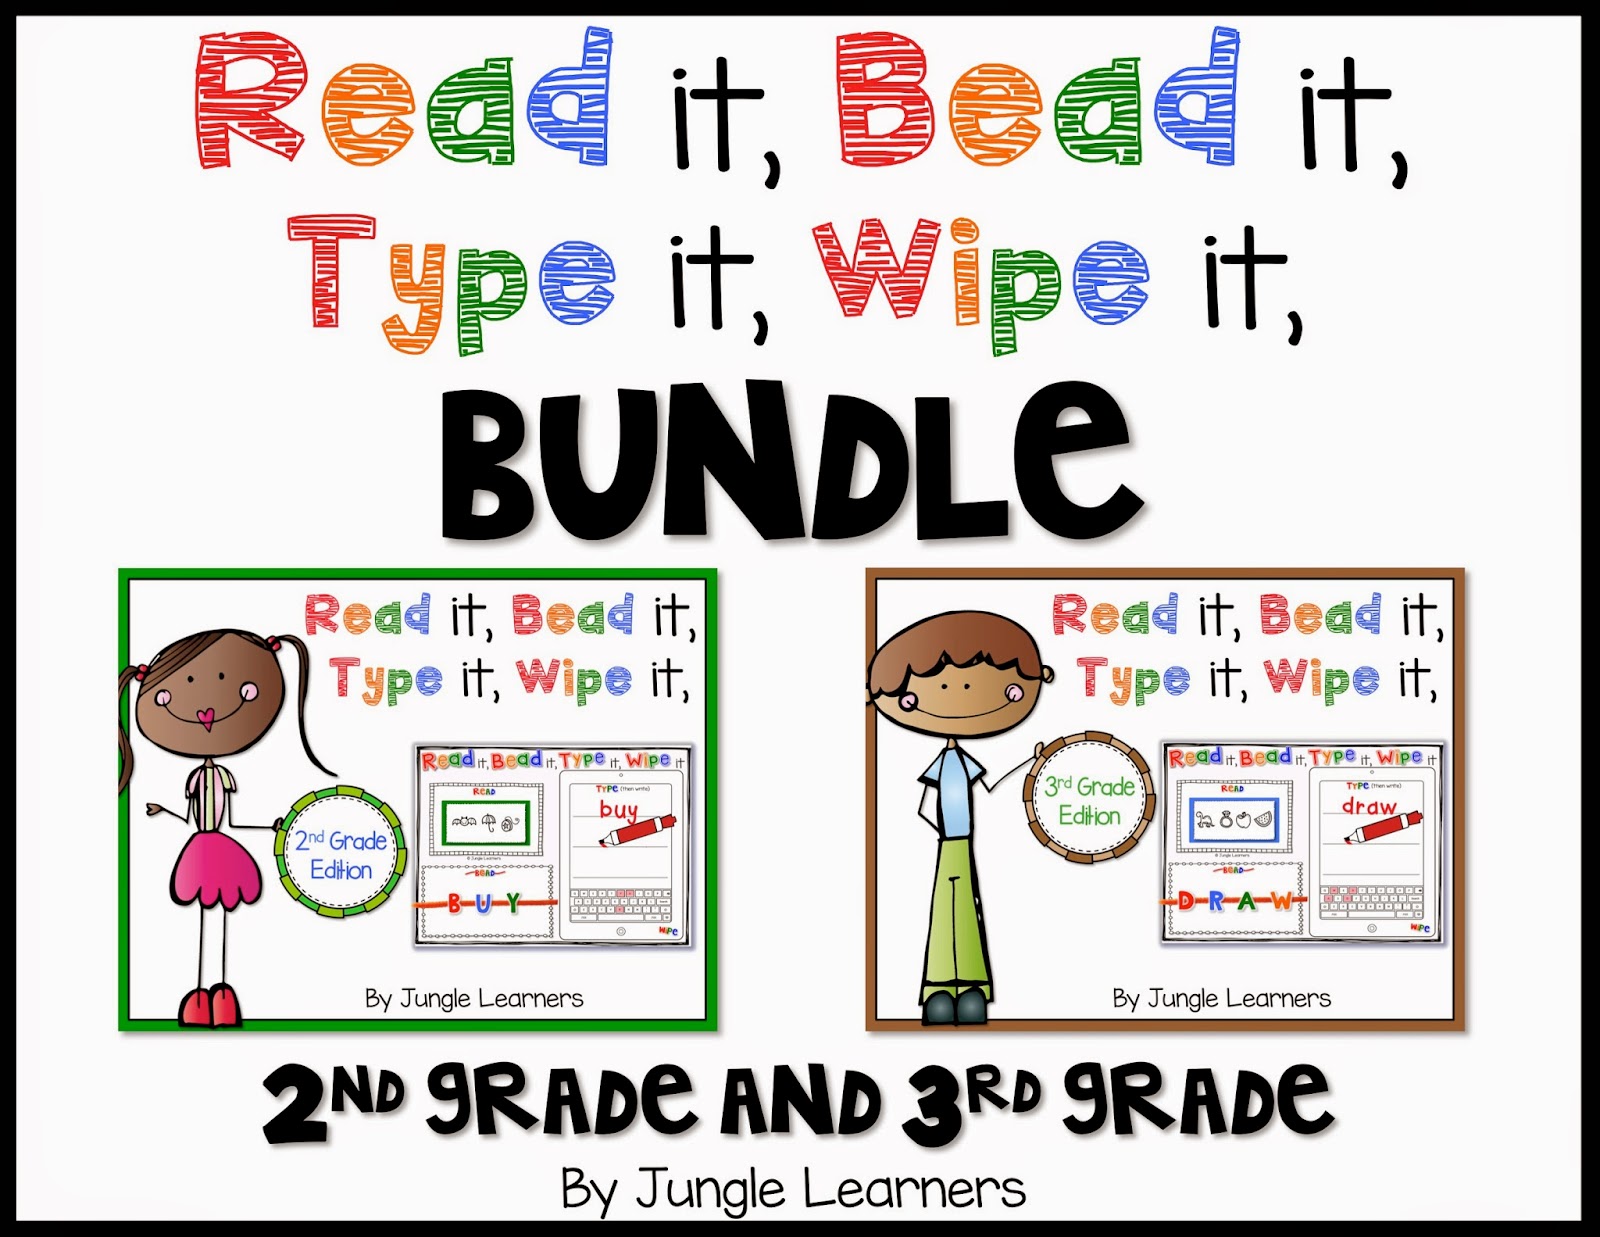 Read it, Bead it, Type it, Wipe it [Advanced Bundle]